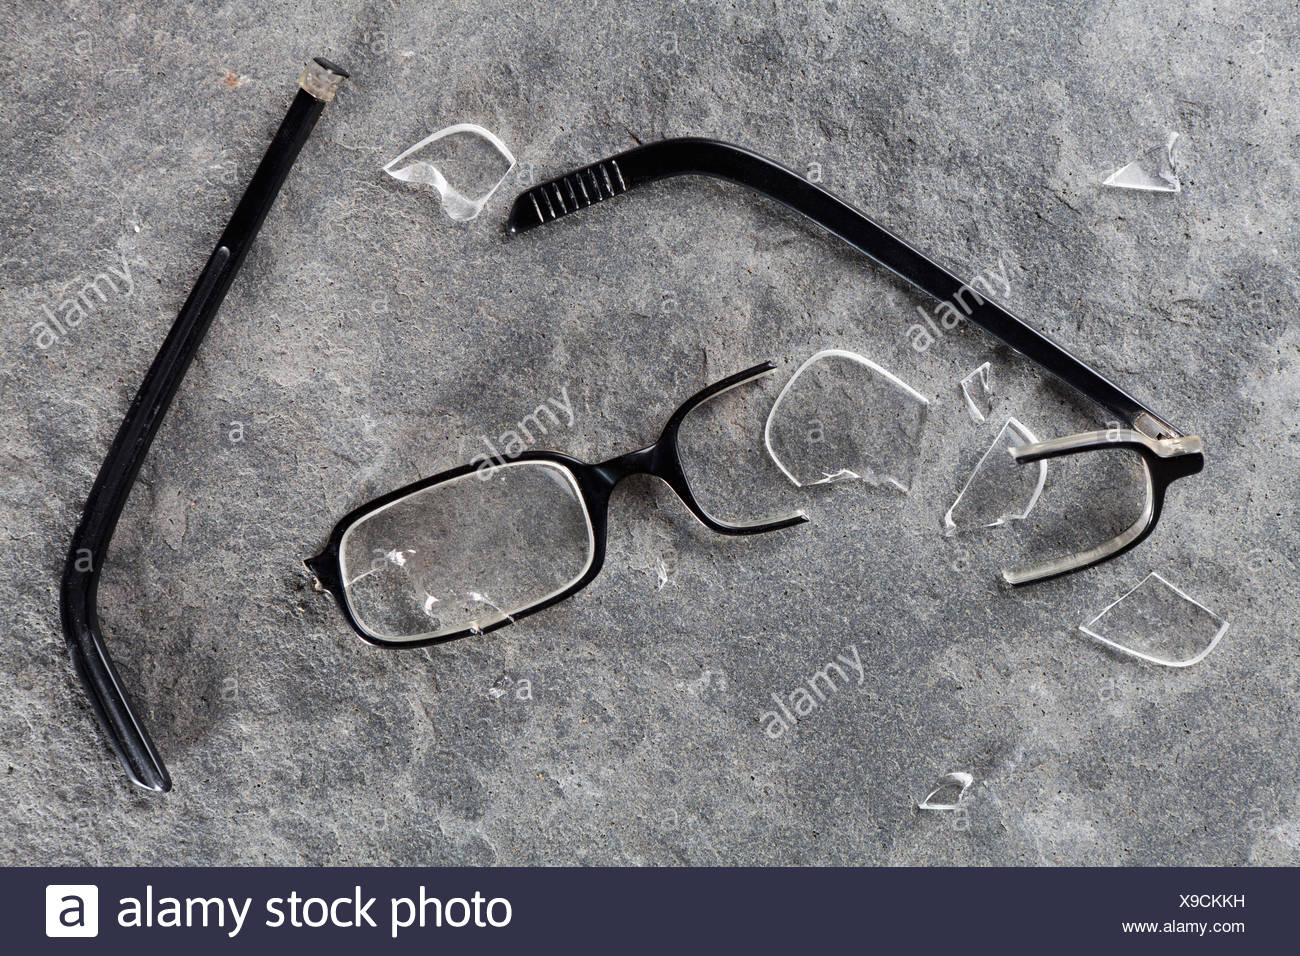 Une paire de lunettes cassée Photo Stock - Alamy